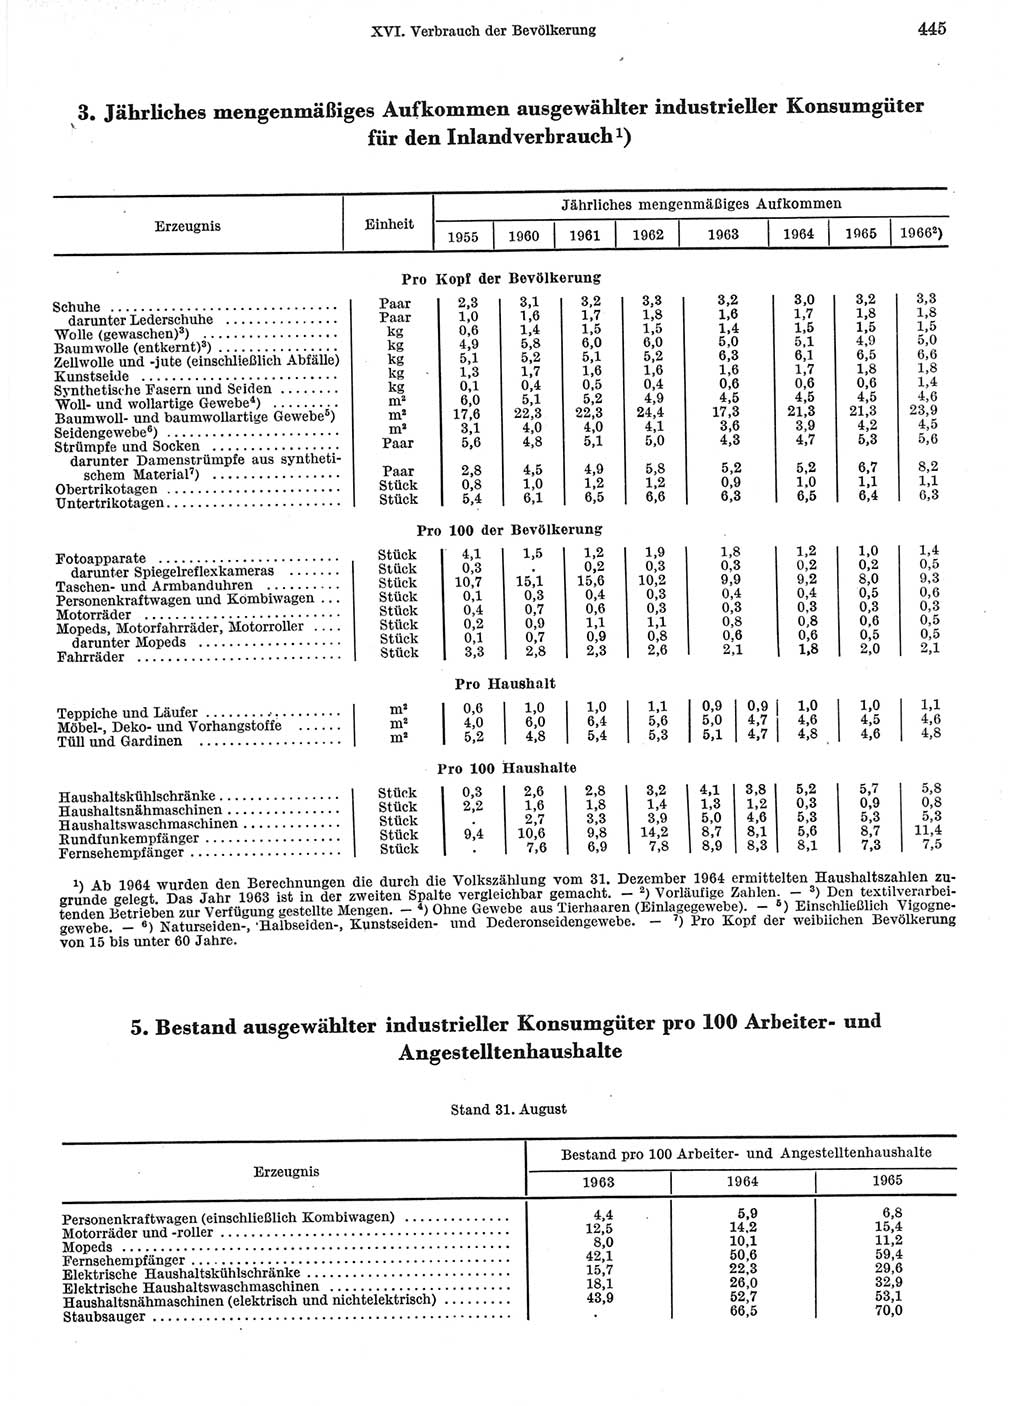 Statistisches Jahrbuch der Deutschen Demokratischen Republik (DDR) 1967, Seite 445 (Stat. Jb. DDR 1967, S. 445)